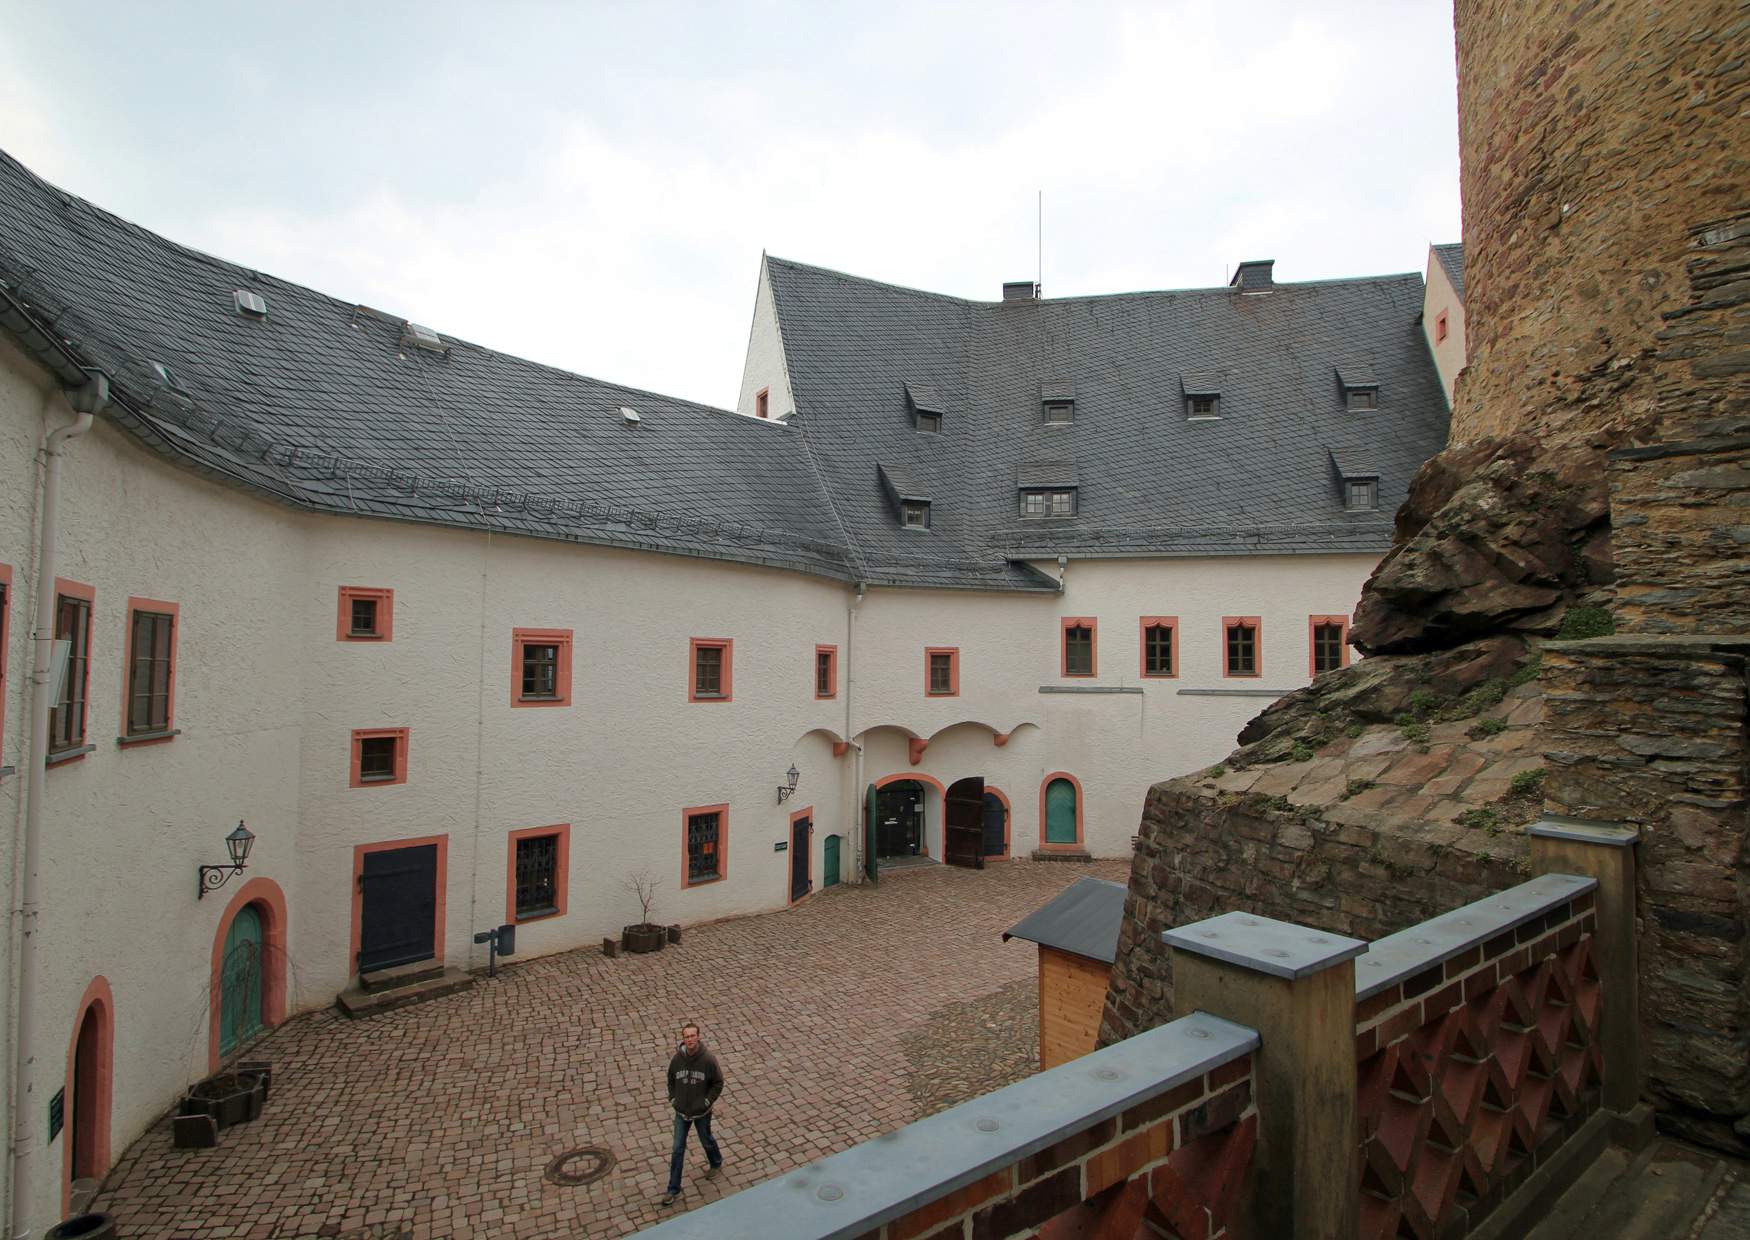 Burghof der Burg Scharfenstein im Erzgebirge